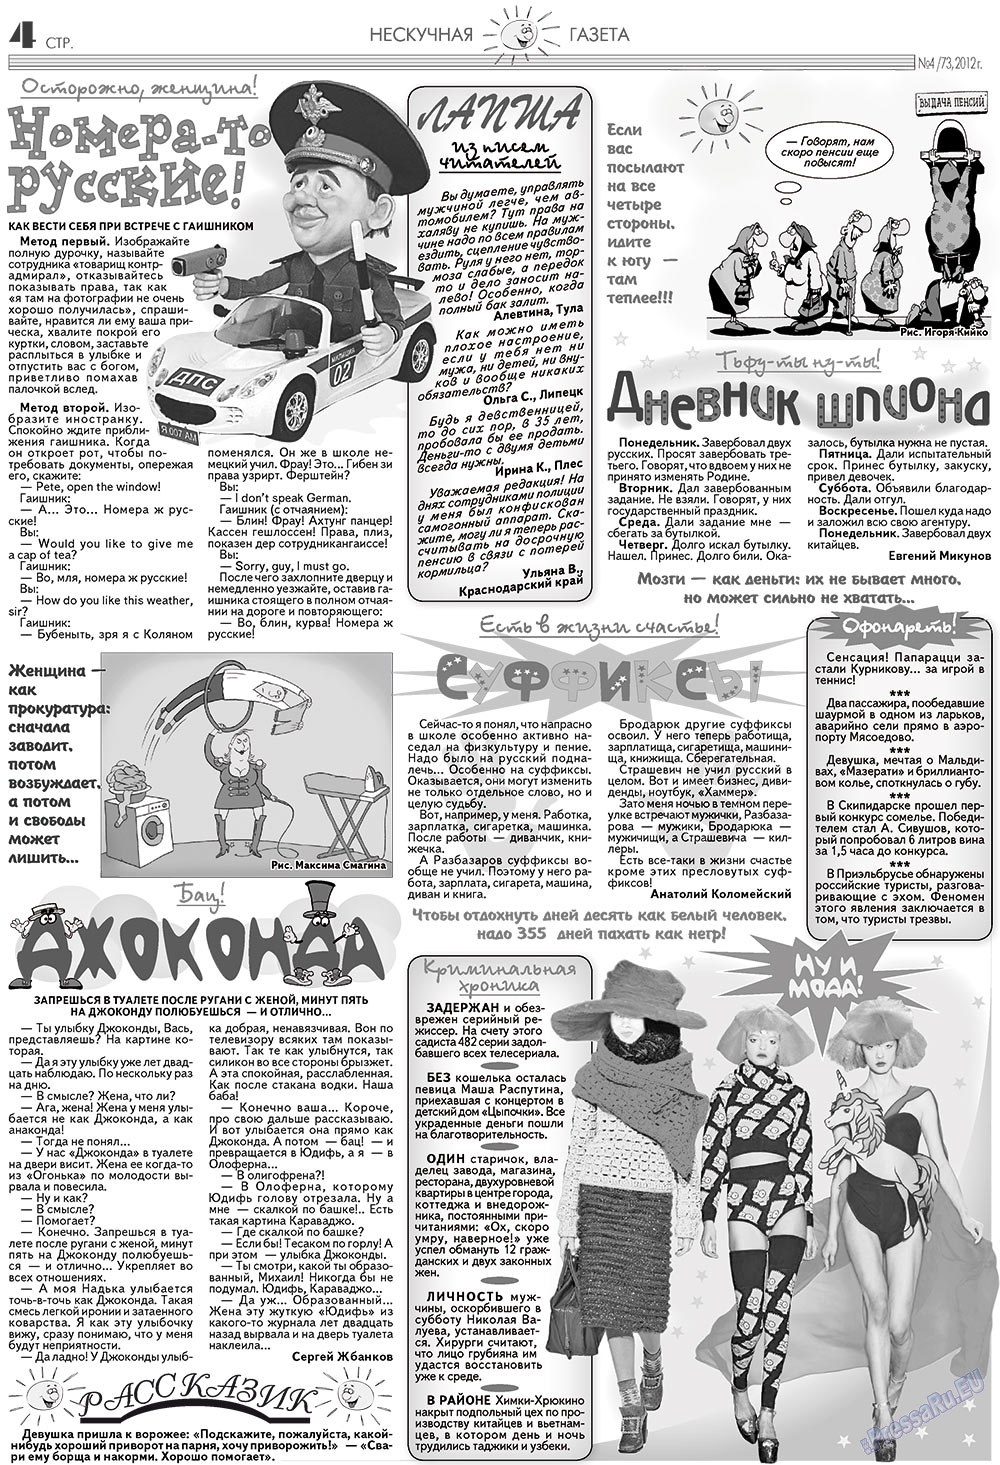 Нескучная газета, журнал. 2012 №4 стр.4